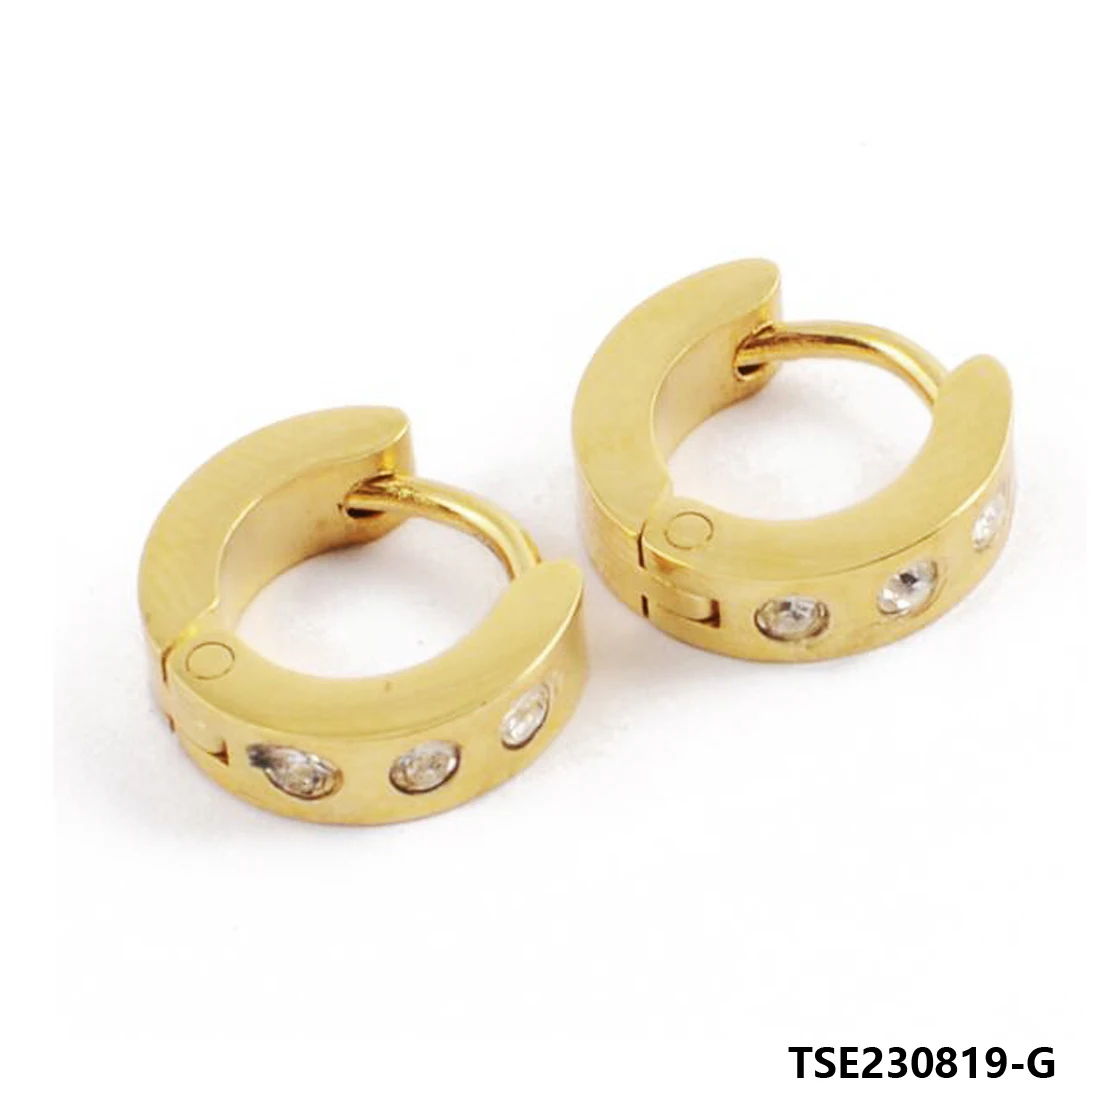 

Новые модные браслеты для женщин, браслет с подвесками из бисера, женский браслет для помолвки TSE230819